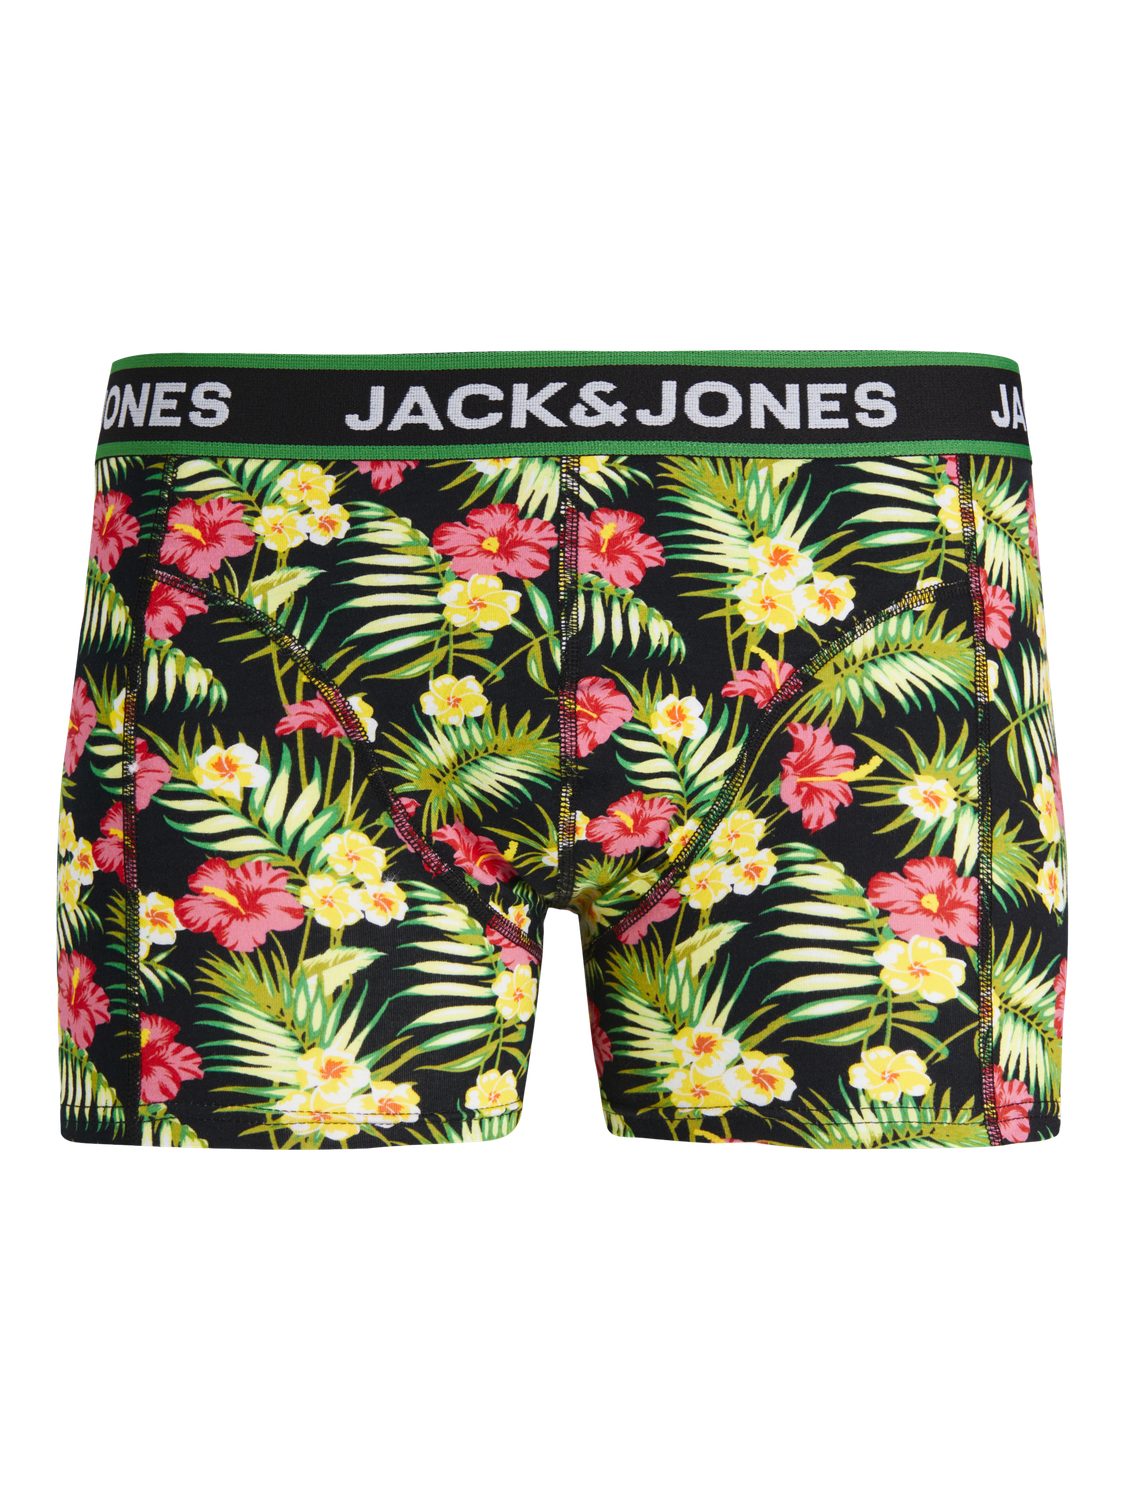 Jack & Jones Pack de 3 Boxers Pour les garçons -Black - 12253234